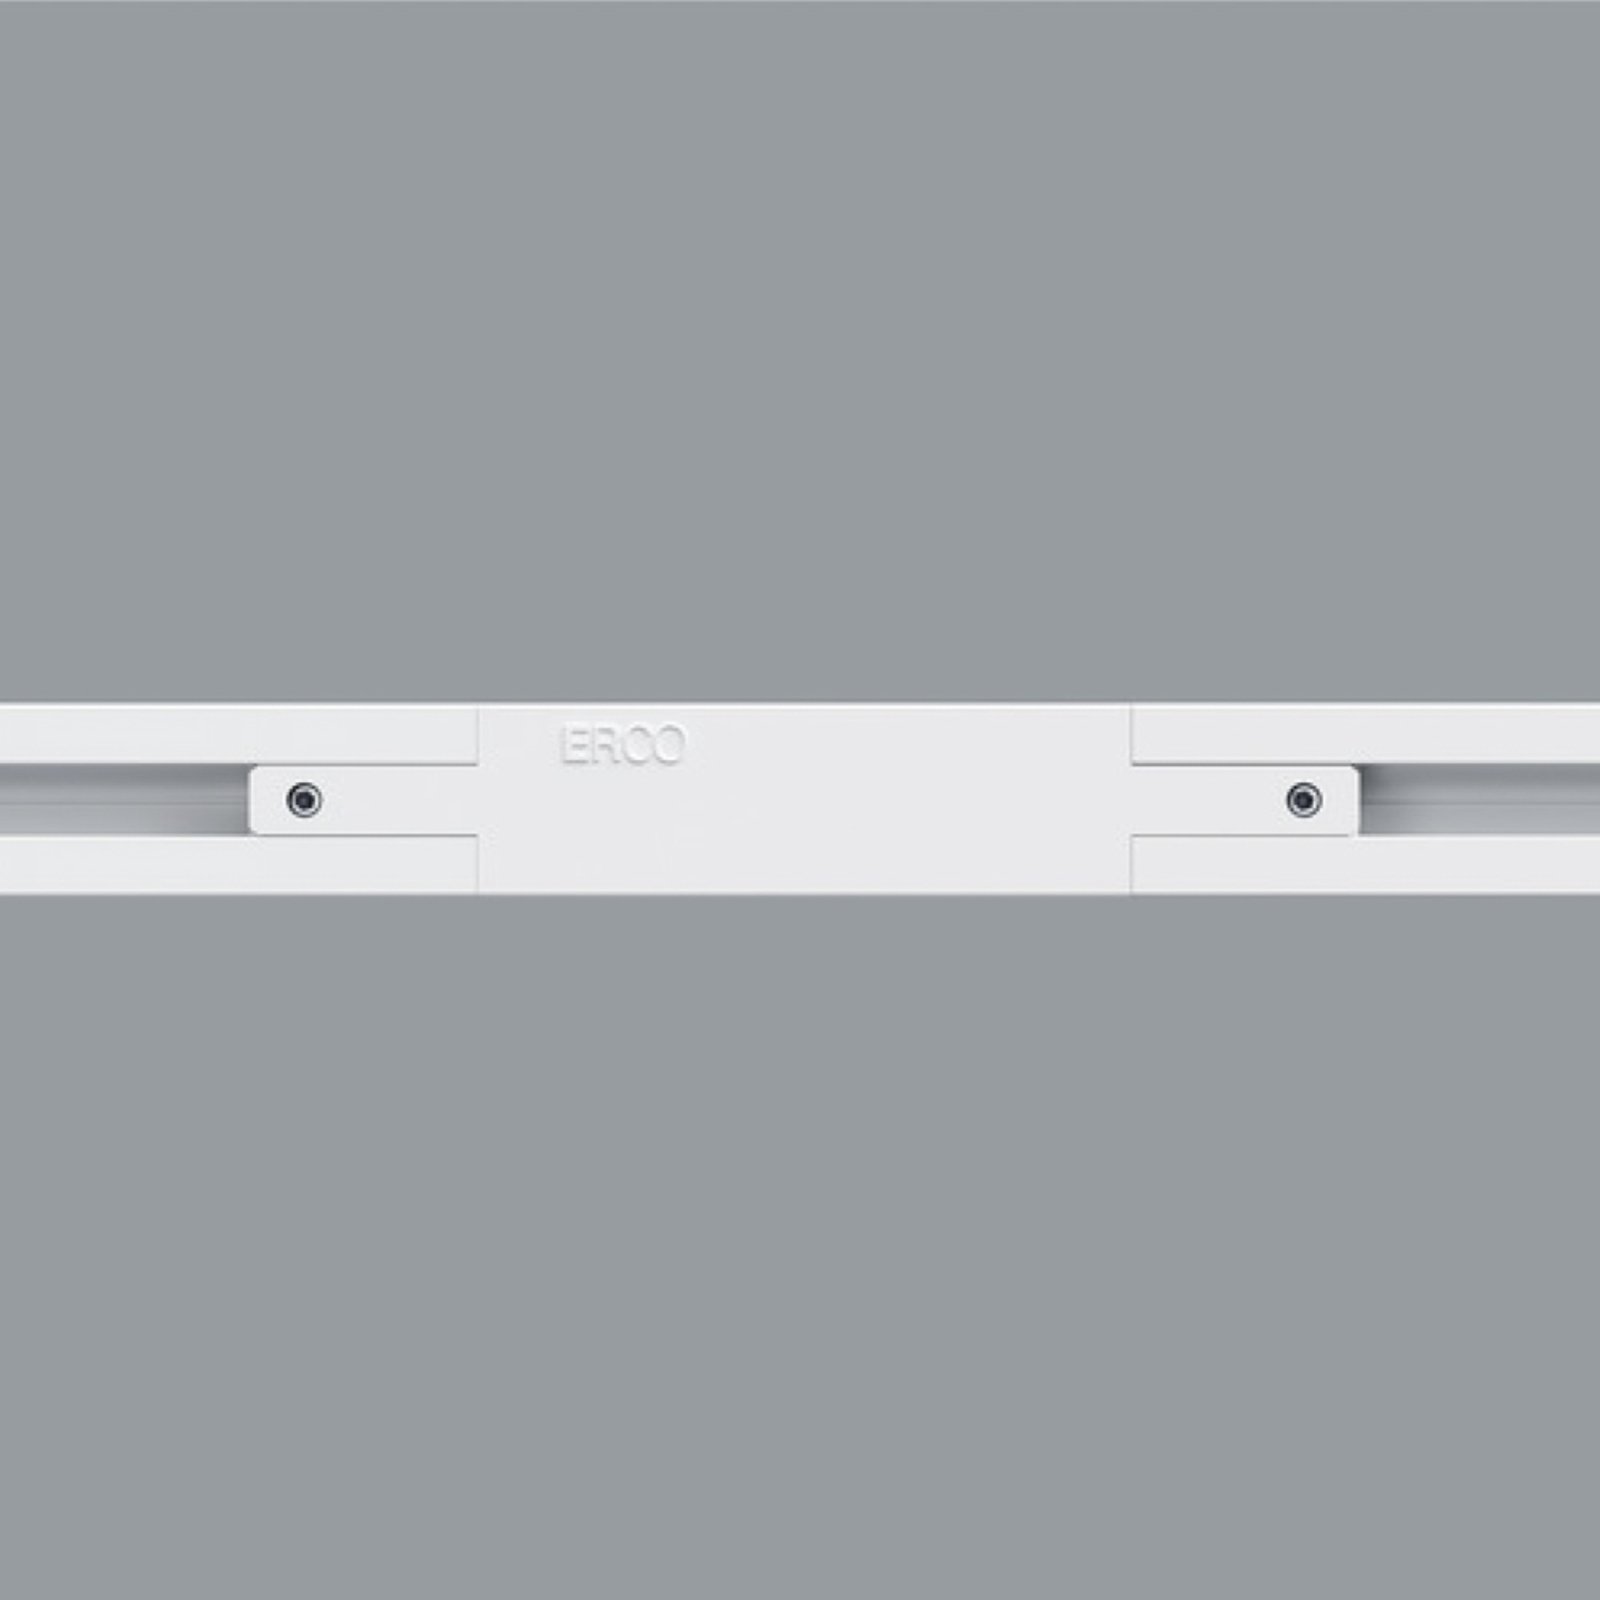 ERCO łącznik podłużny szyny Minirail, biały